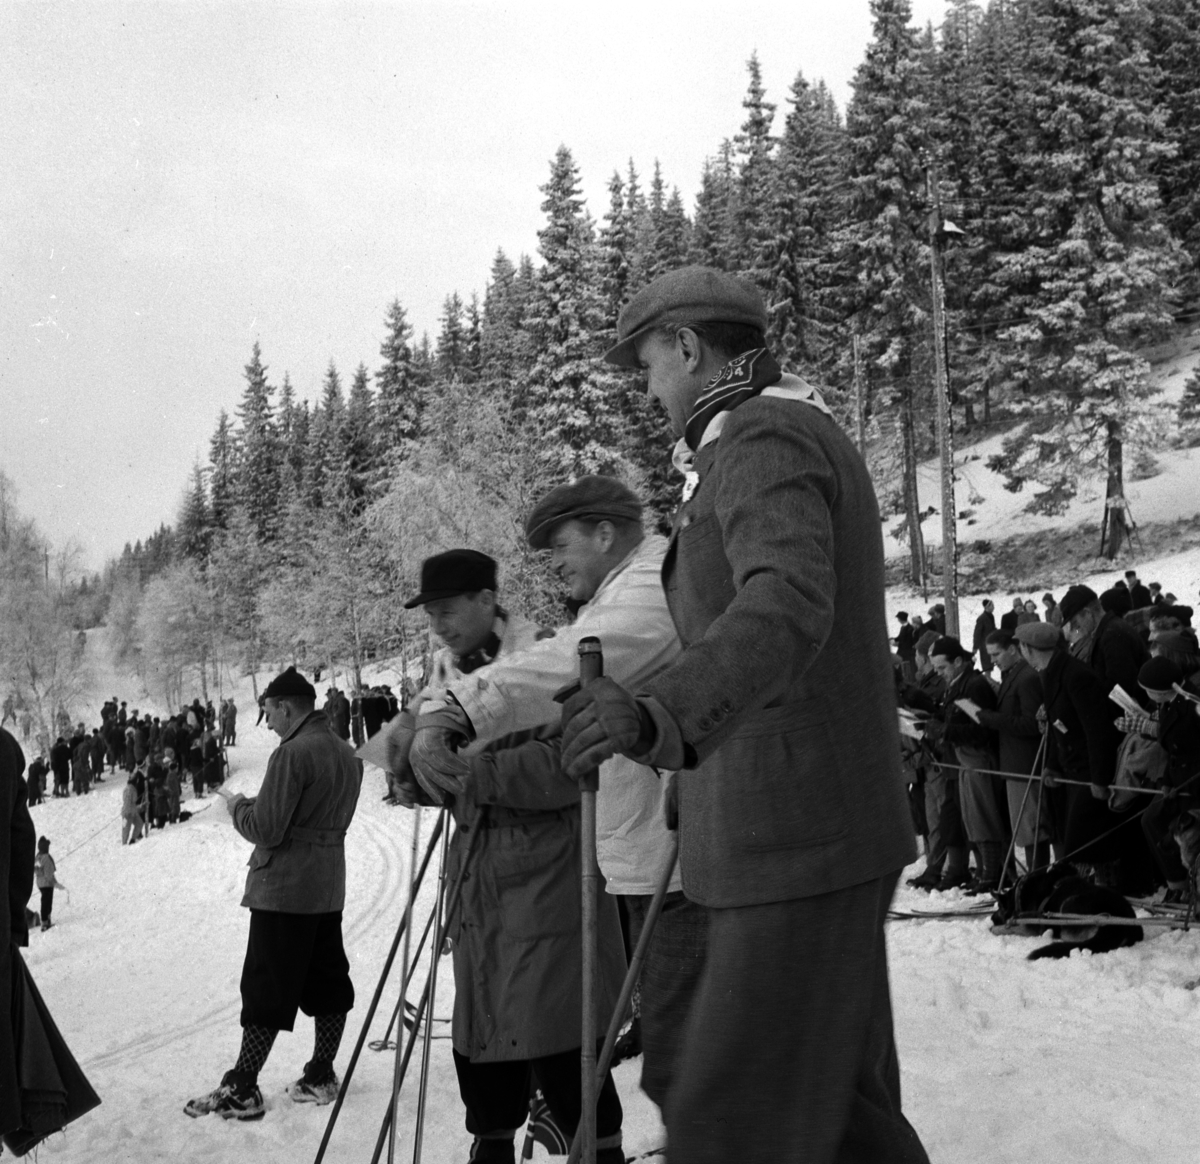 Norgesmesterskap på ski, langrenn på Høsbjør i Furnes 1949. Skisport. Vinteridrett. H. K. H kronprins Olav på ski på skistadion, anorakk og sixpe